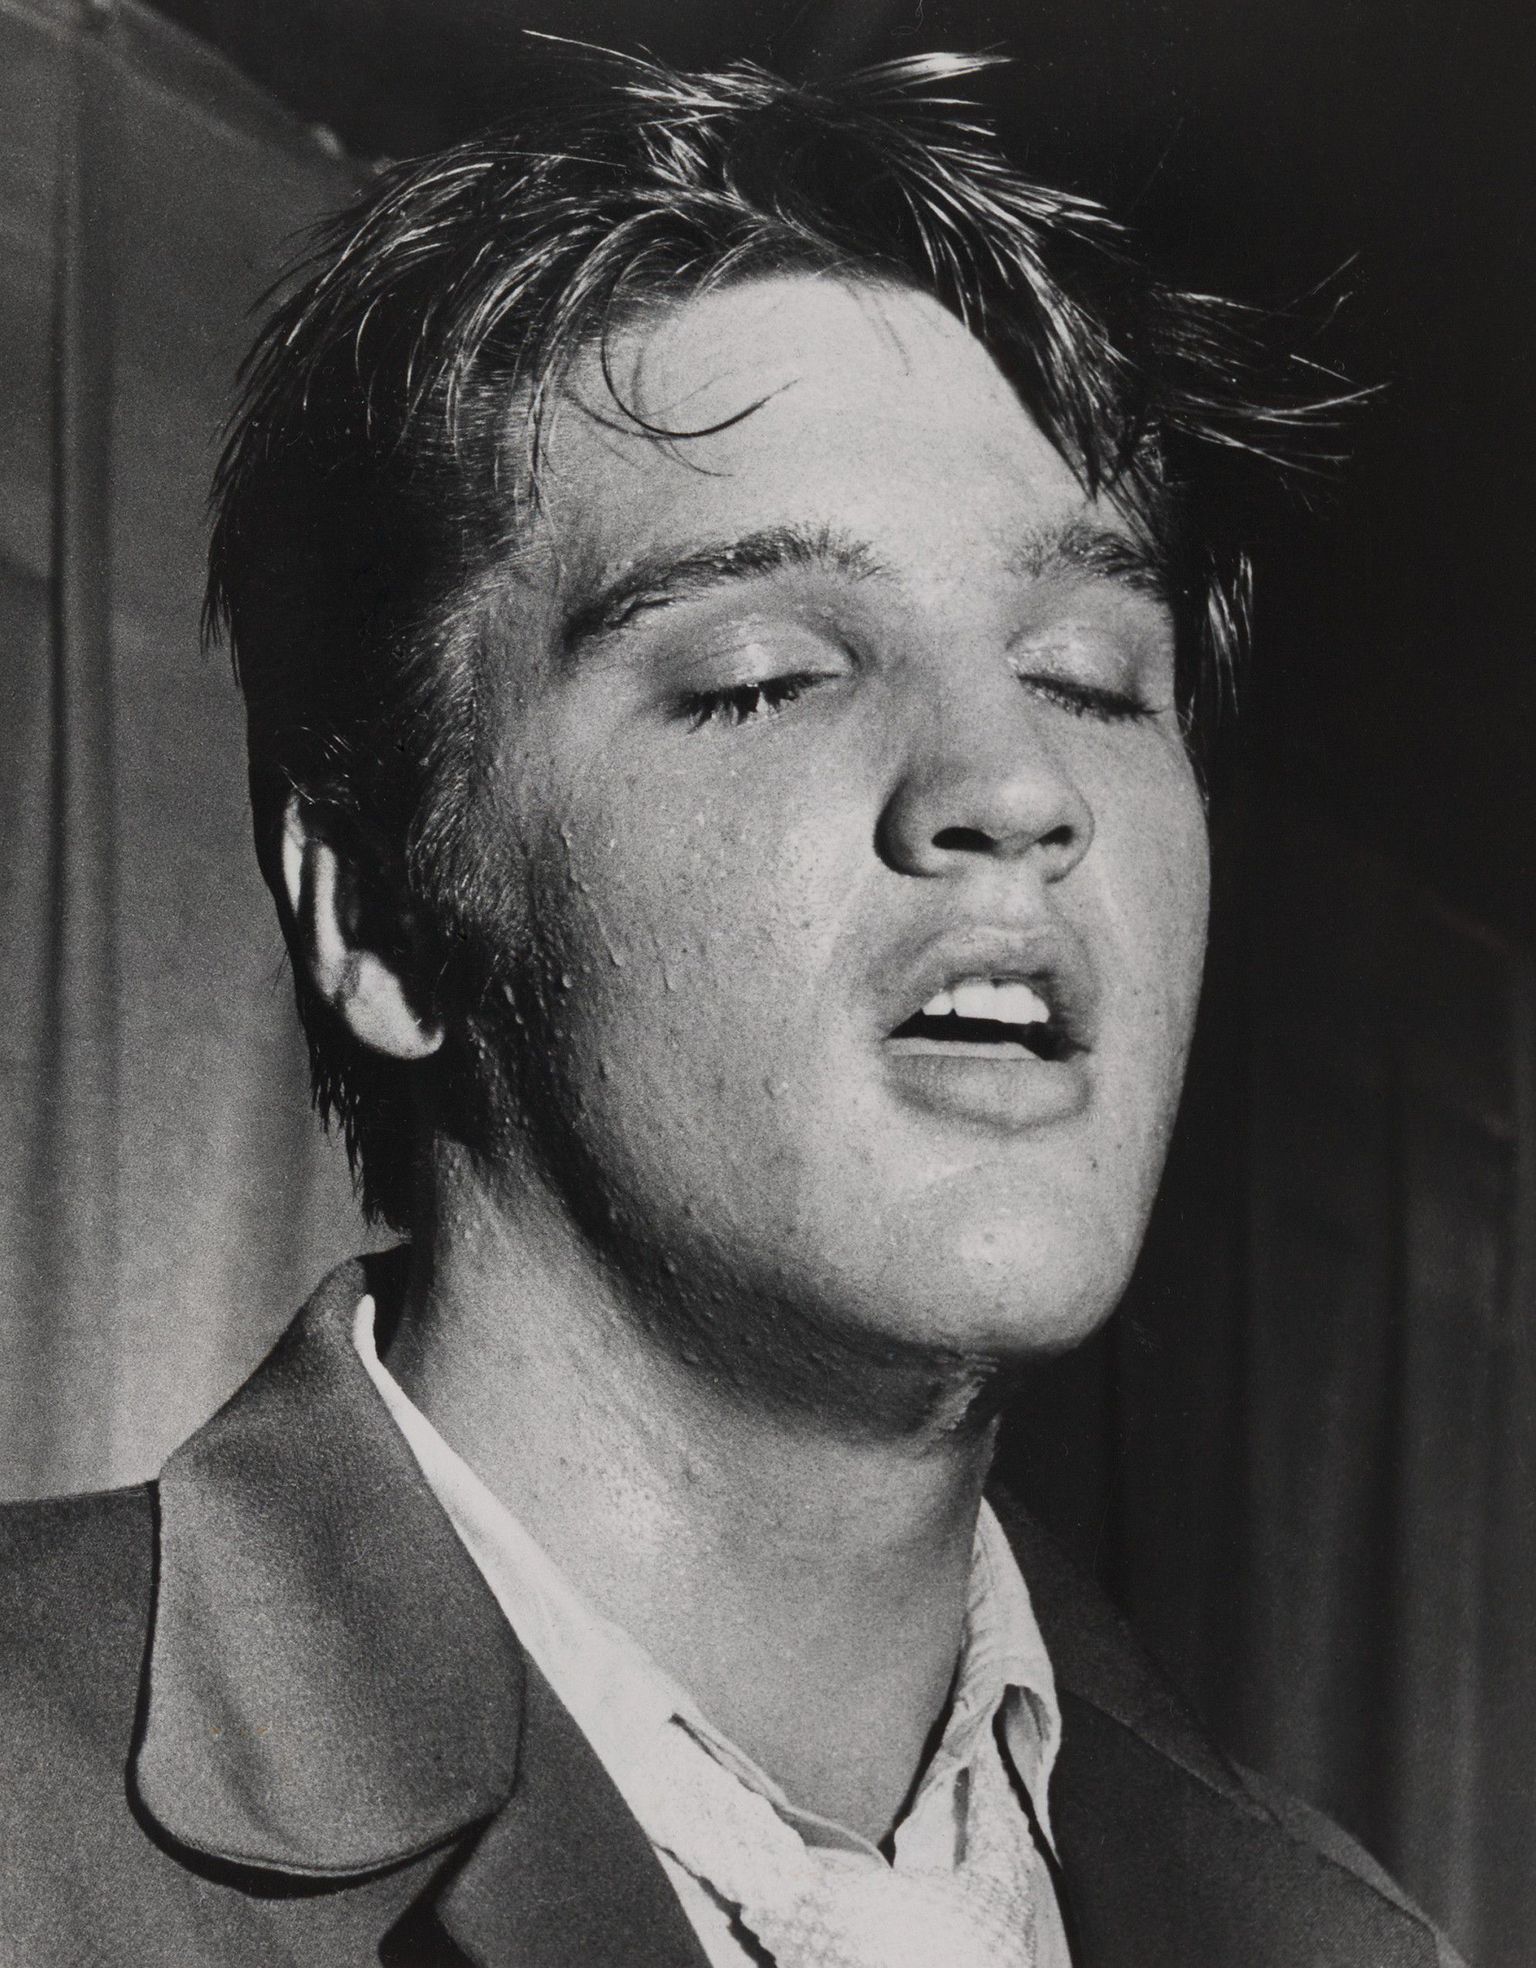 Bob Morelandi (St. Petersburg Times) auhinnatud portreefoto Elvisest. Aasta 1957